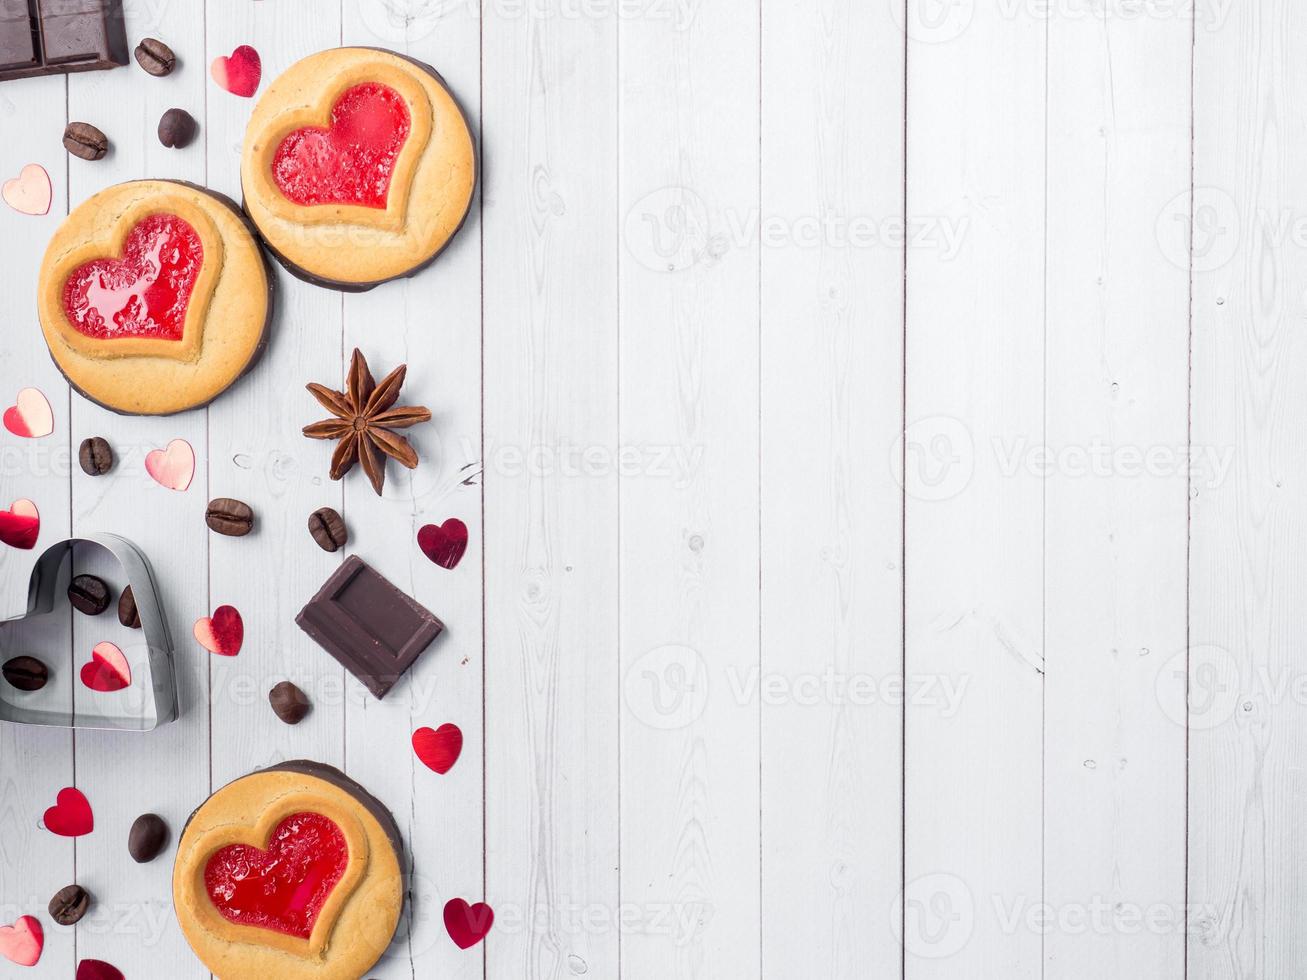 biscoitos caseiros com um coração de geléia vermelha dia dos namorados café e chocolate anis estrelado cópia espaço plano foto